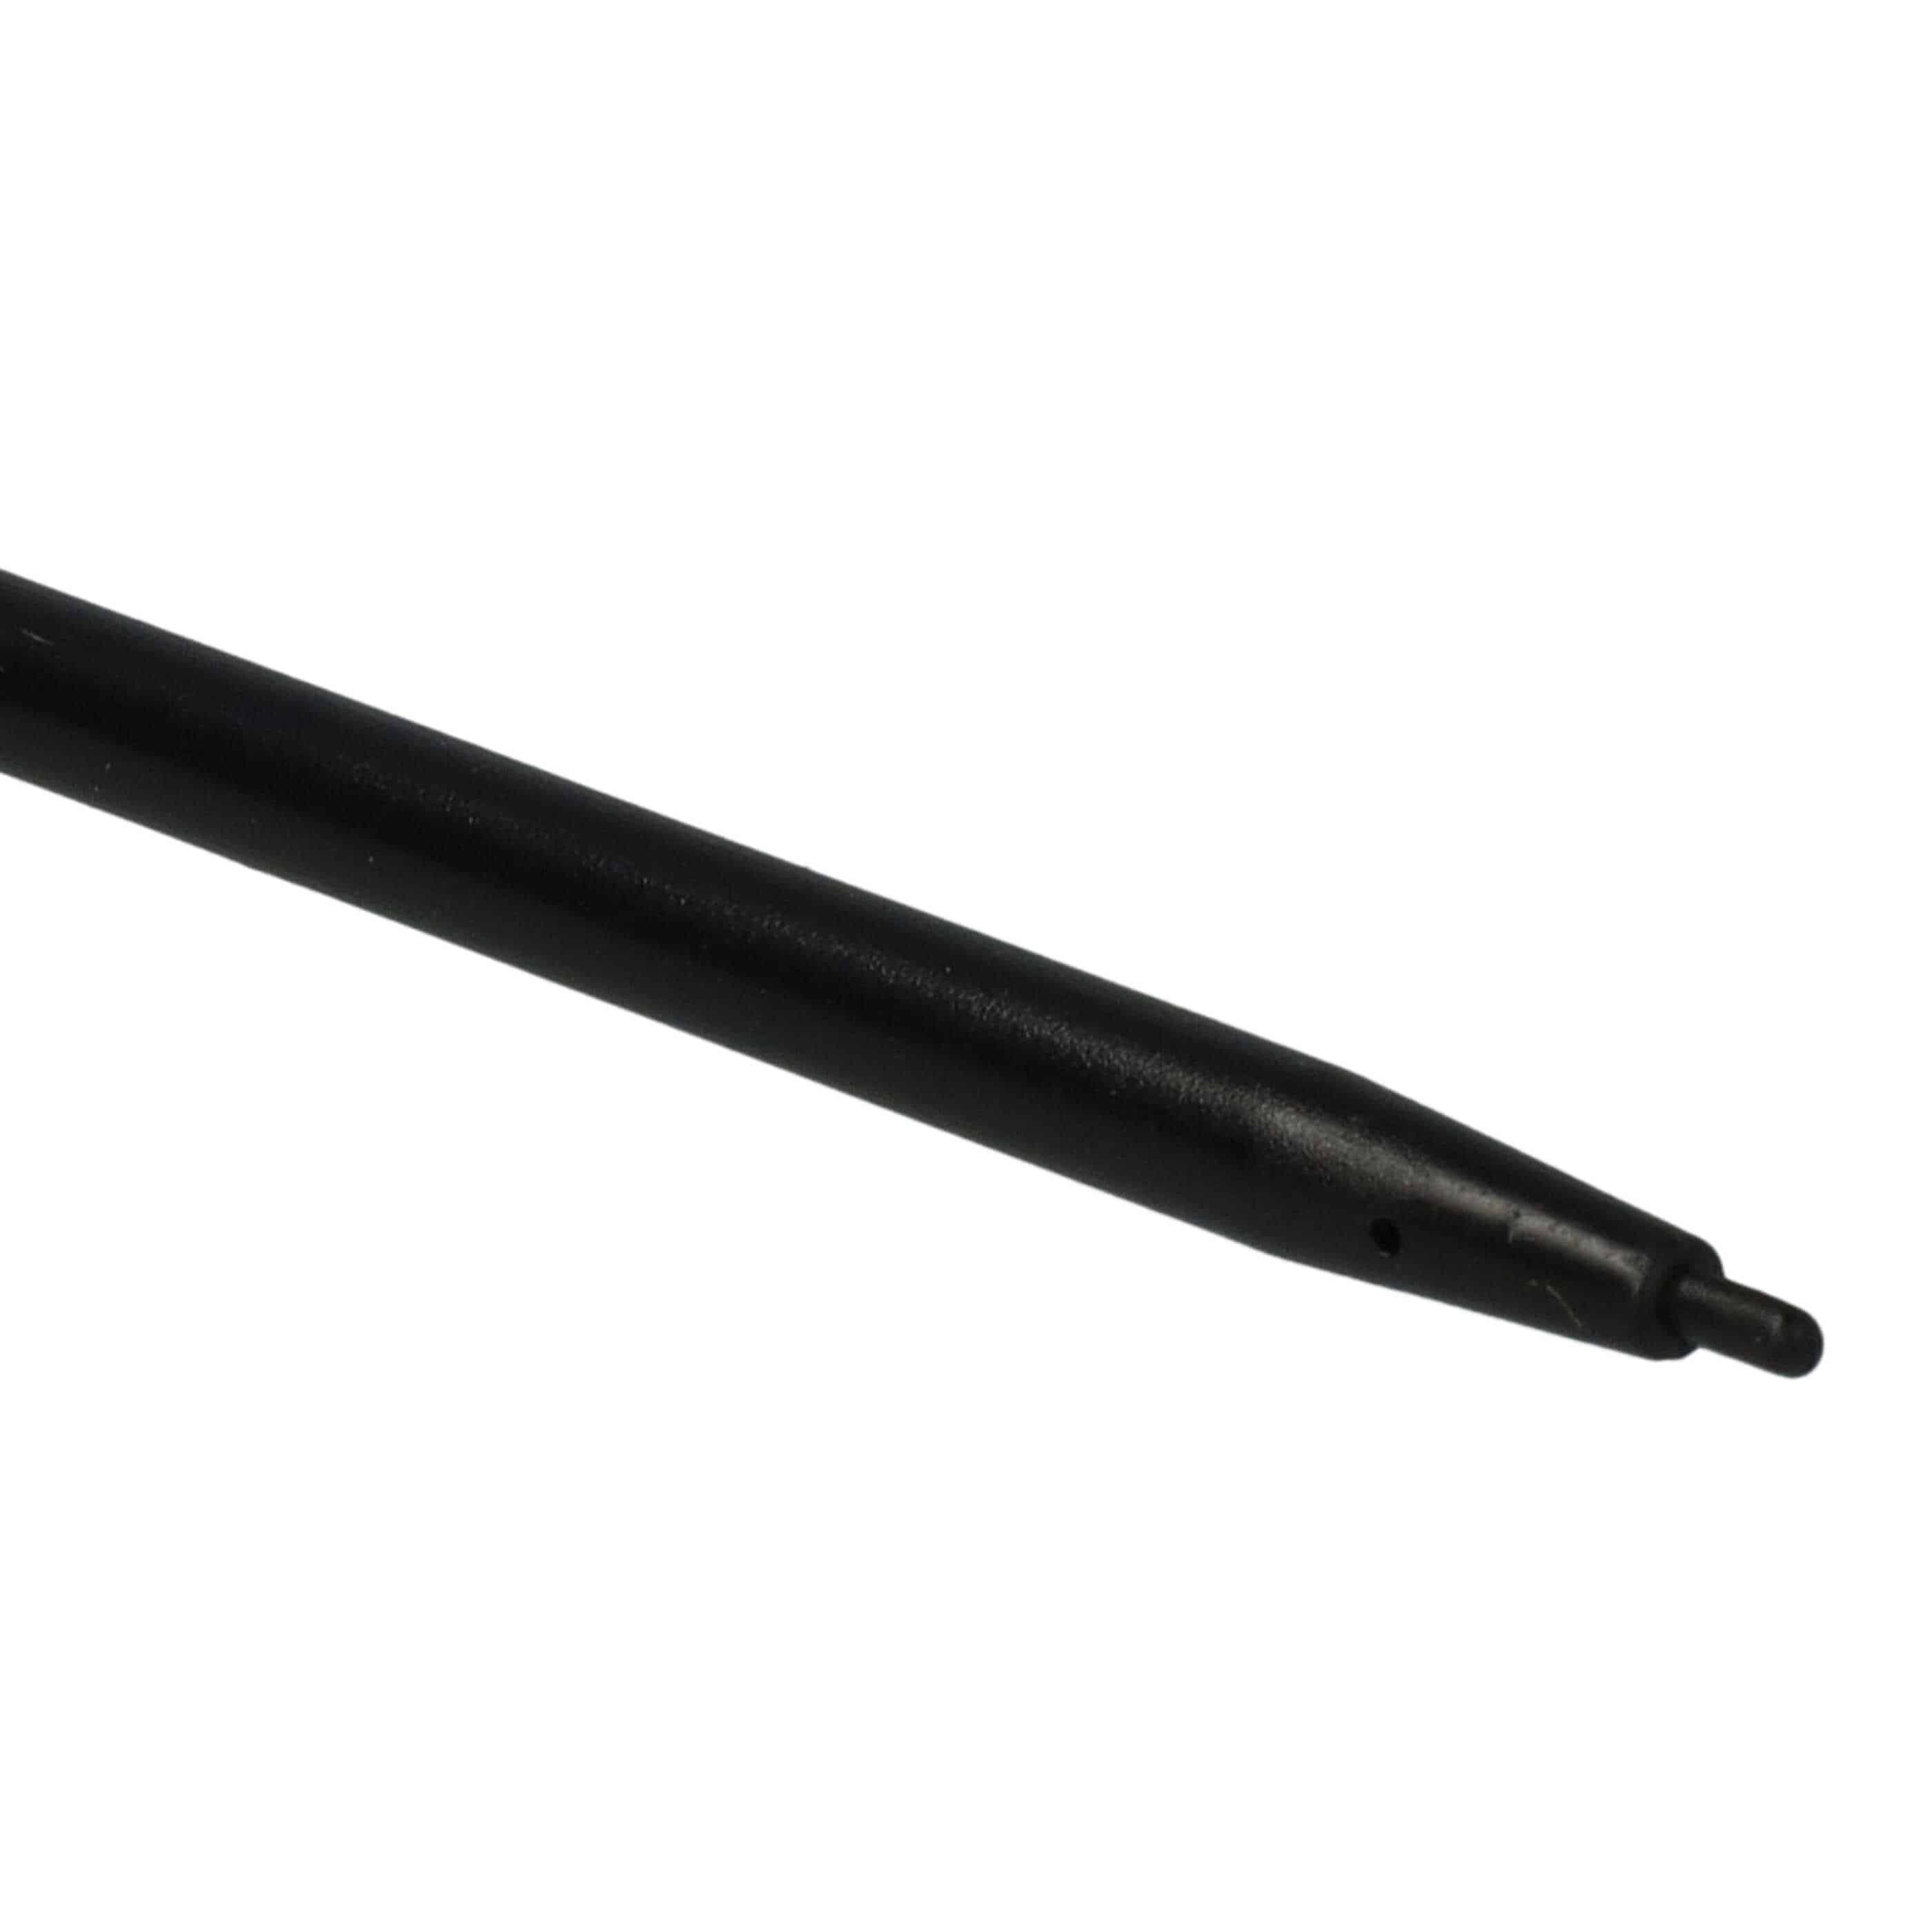 10x Rysik touch pen do konsoli Nintendo Wii U - czarny, biały